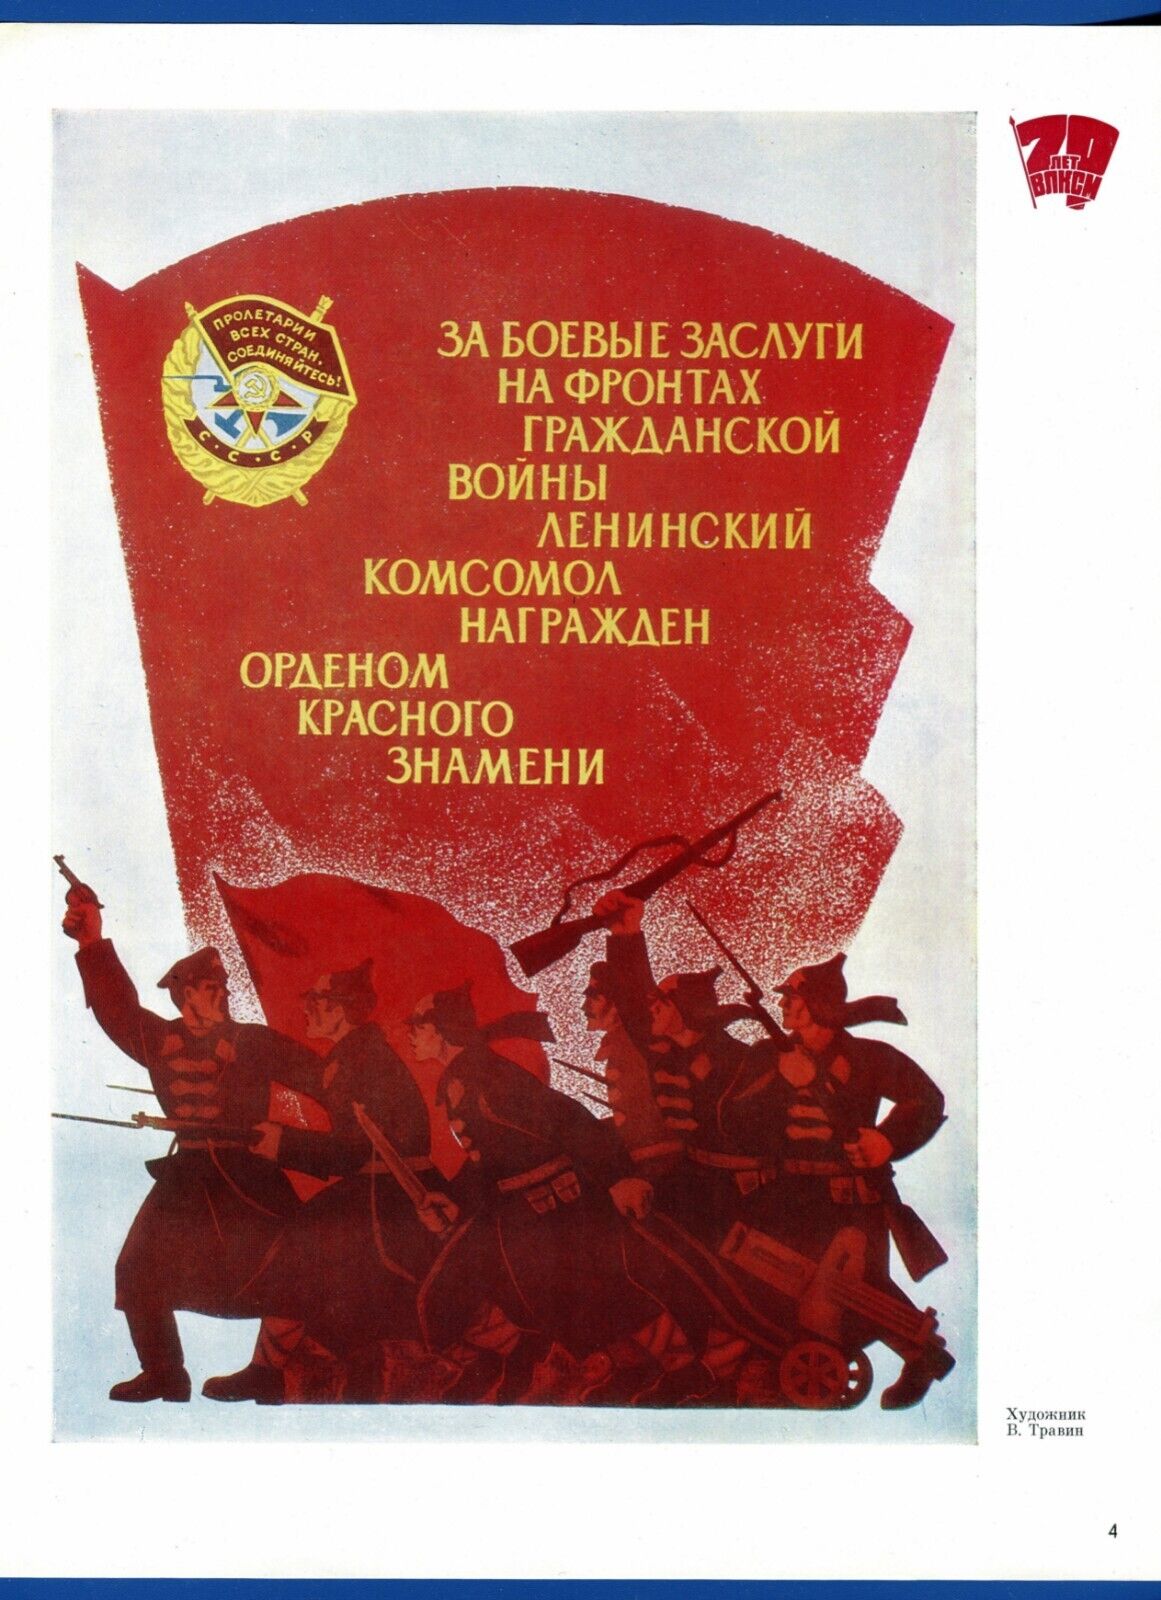 Original Poster Soviet History, Komsomol Lenin Russia, USSR Political Propaganda